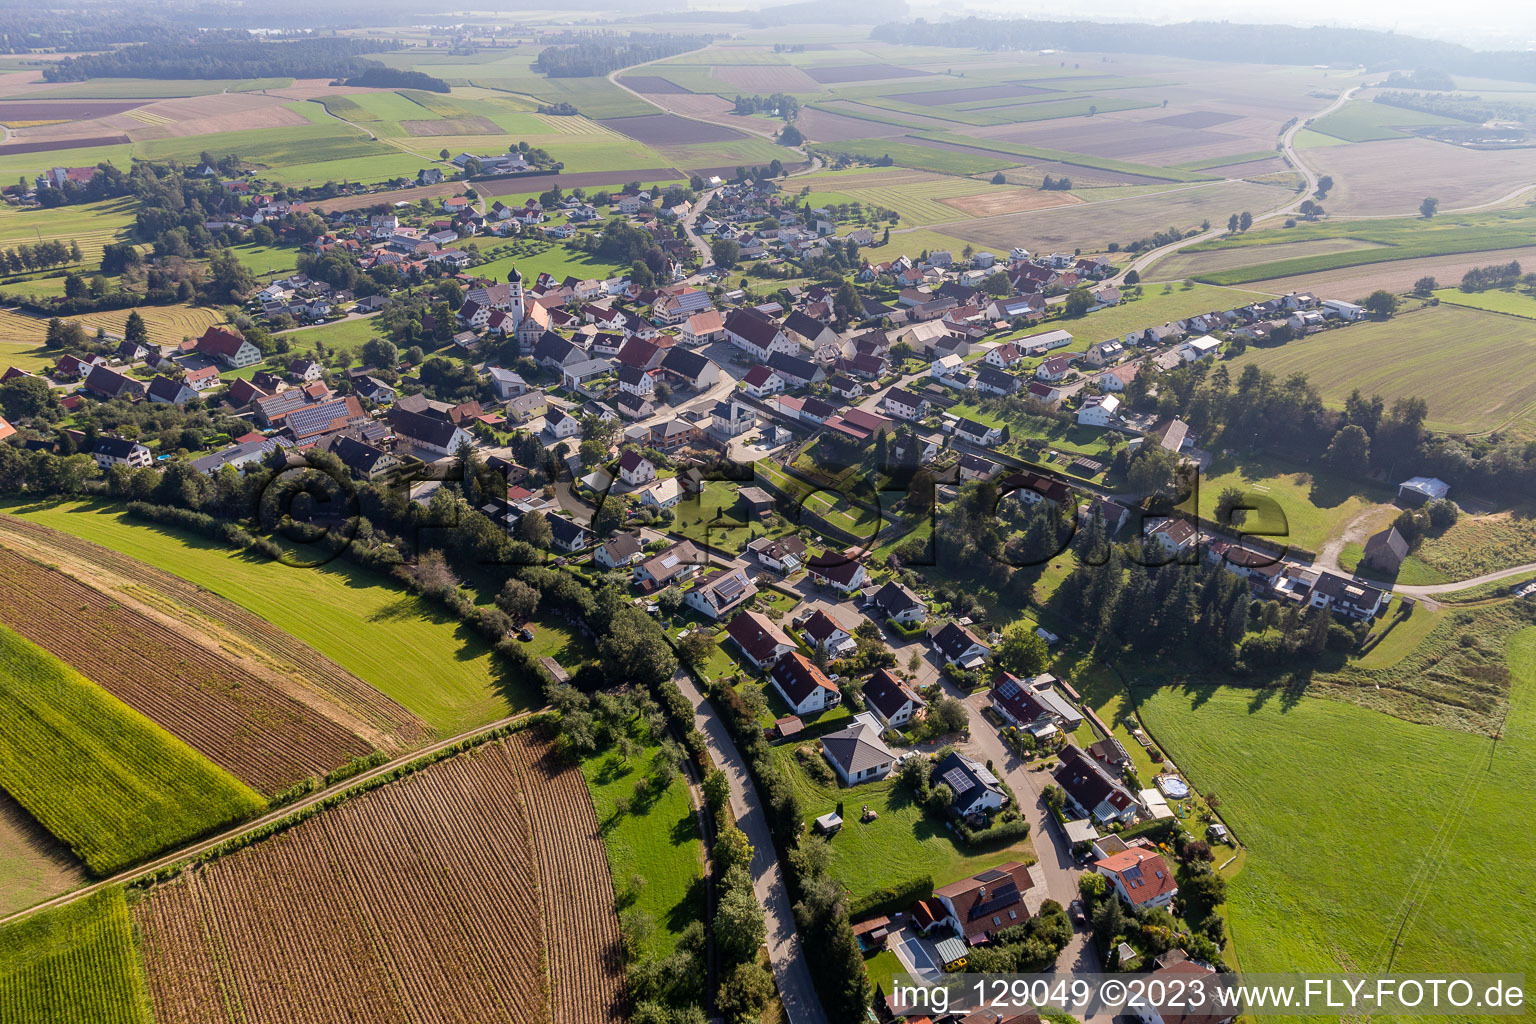 Vue aérienne de Quartier Reichenbach in Bad Schussenried dans le département Bade-Wurtemberg, Allemagne